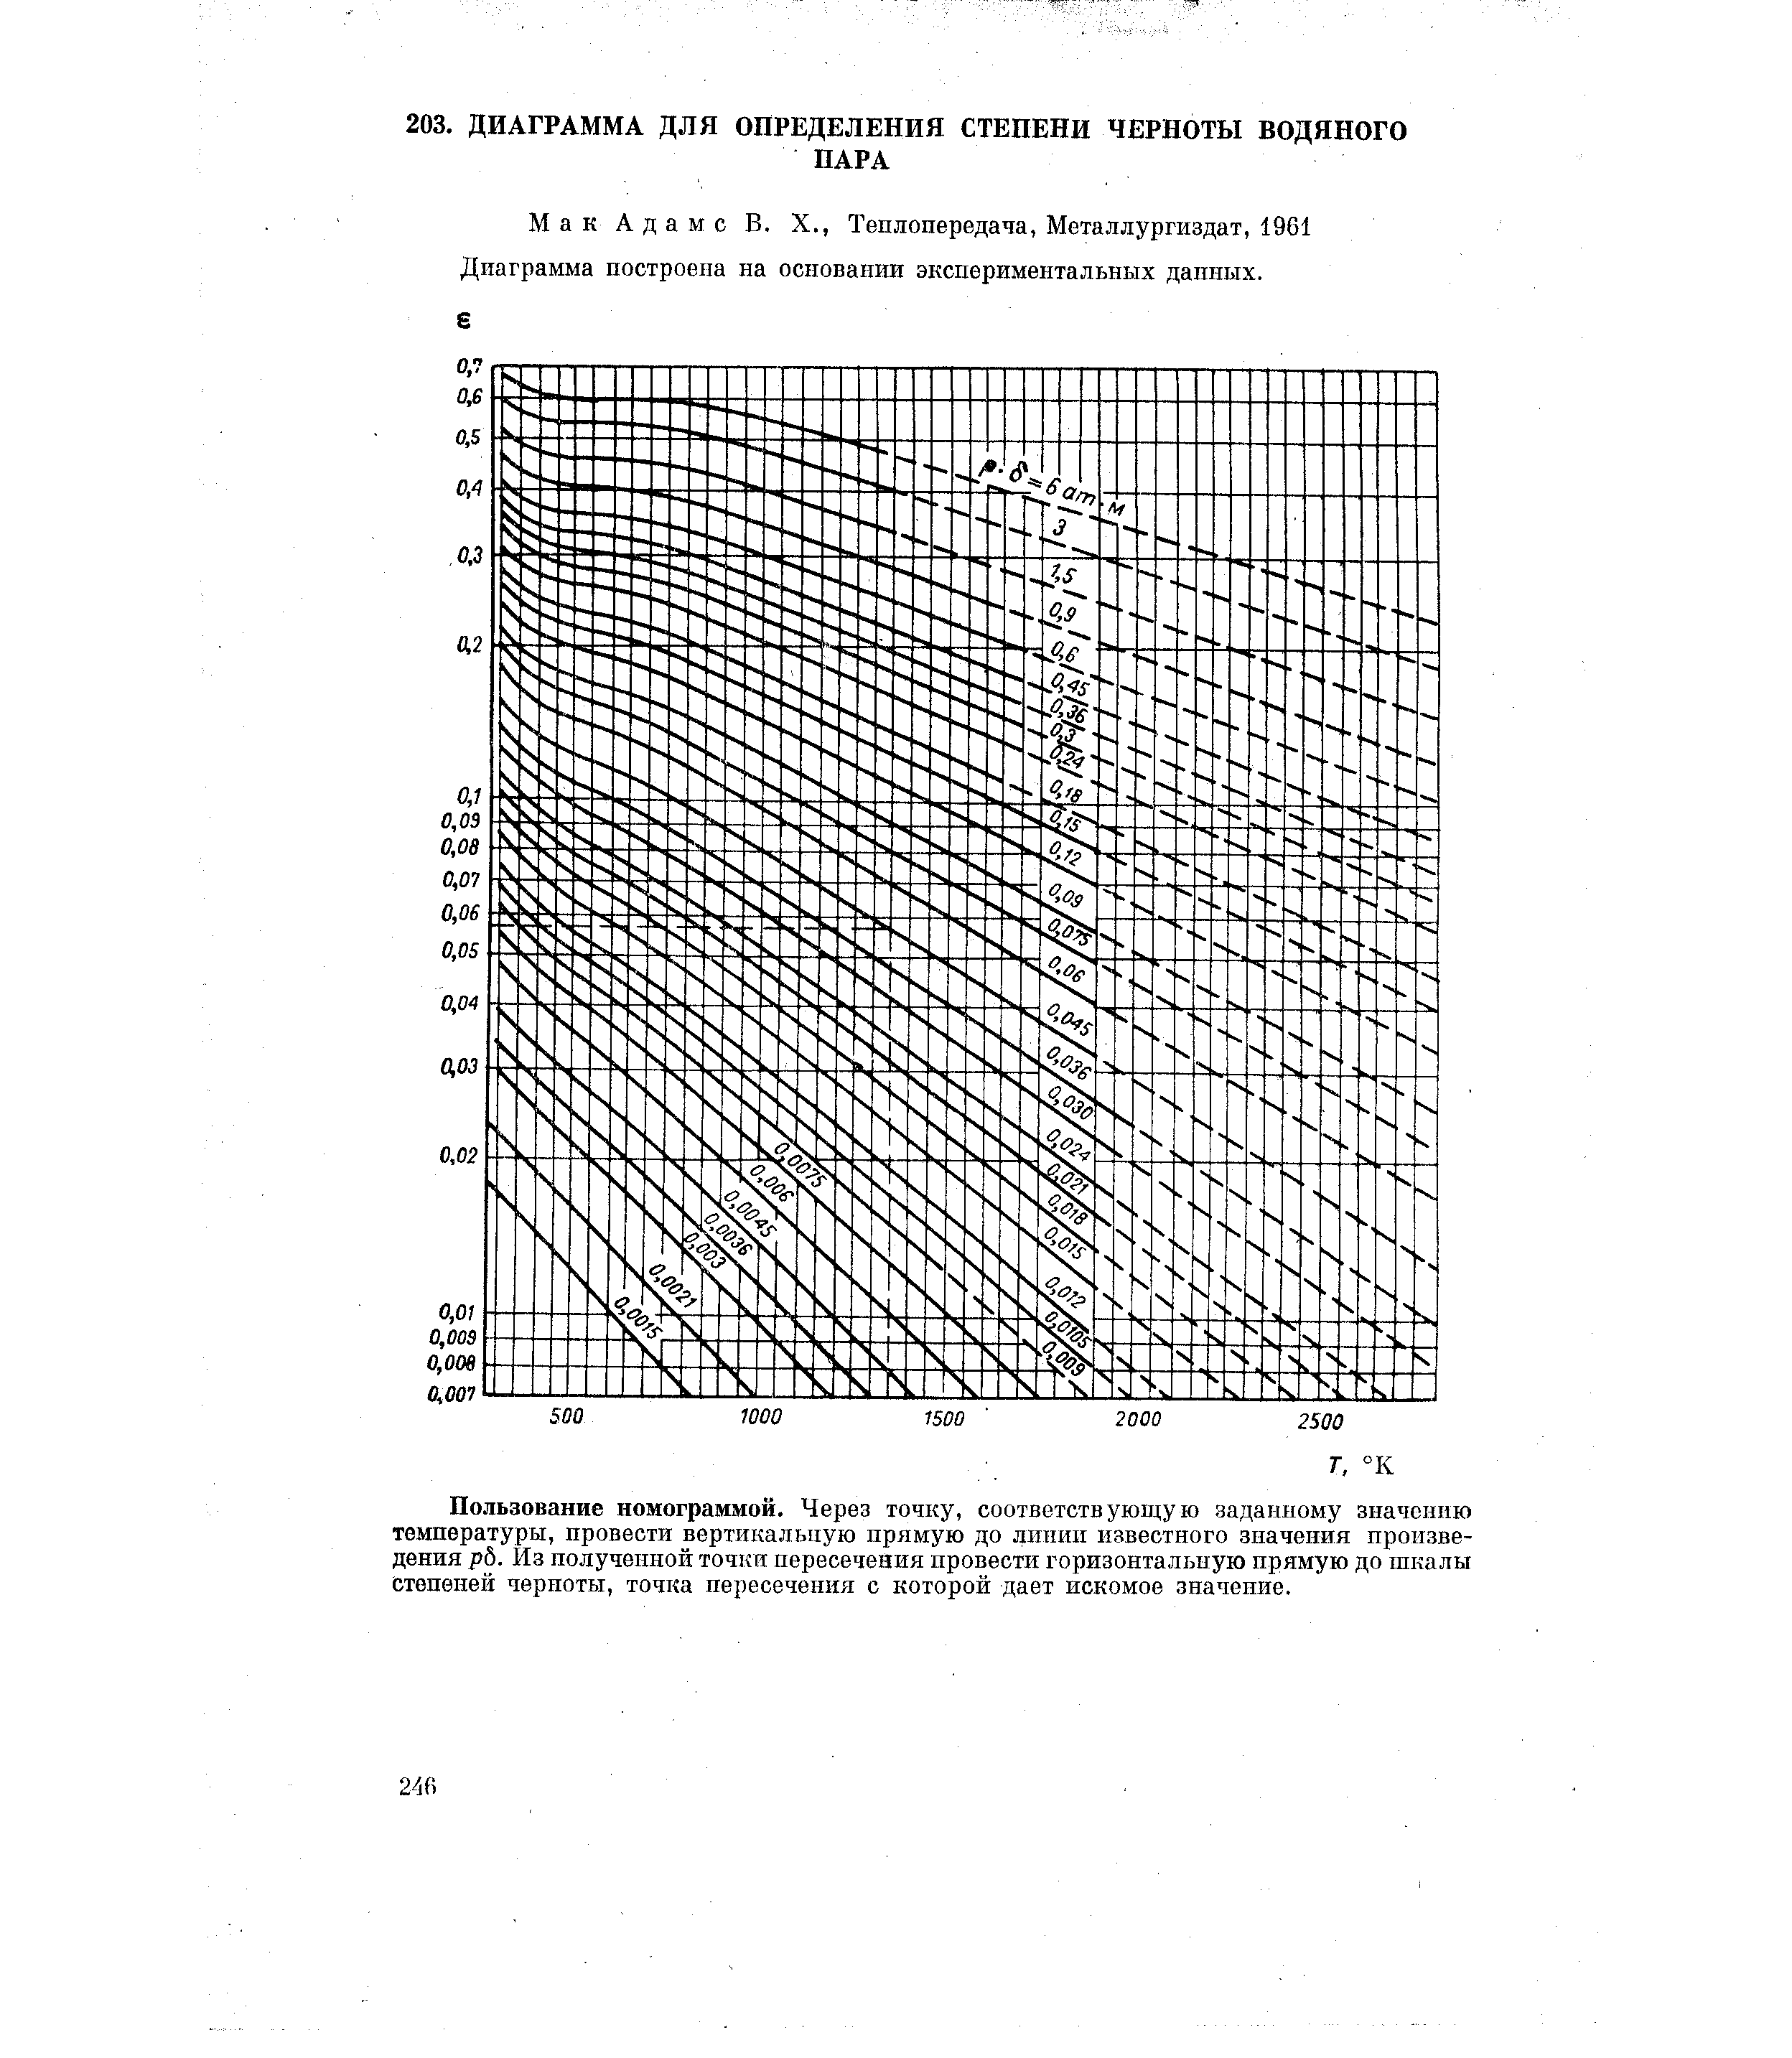 Мак Адамс В. X., Теплопередача, Металлургиздат, 1961 Диаграмма построена на основании экспериментальных данных.